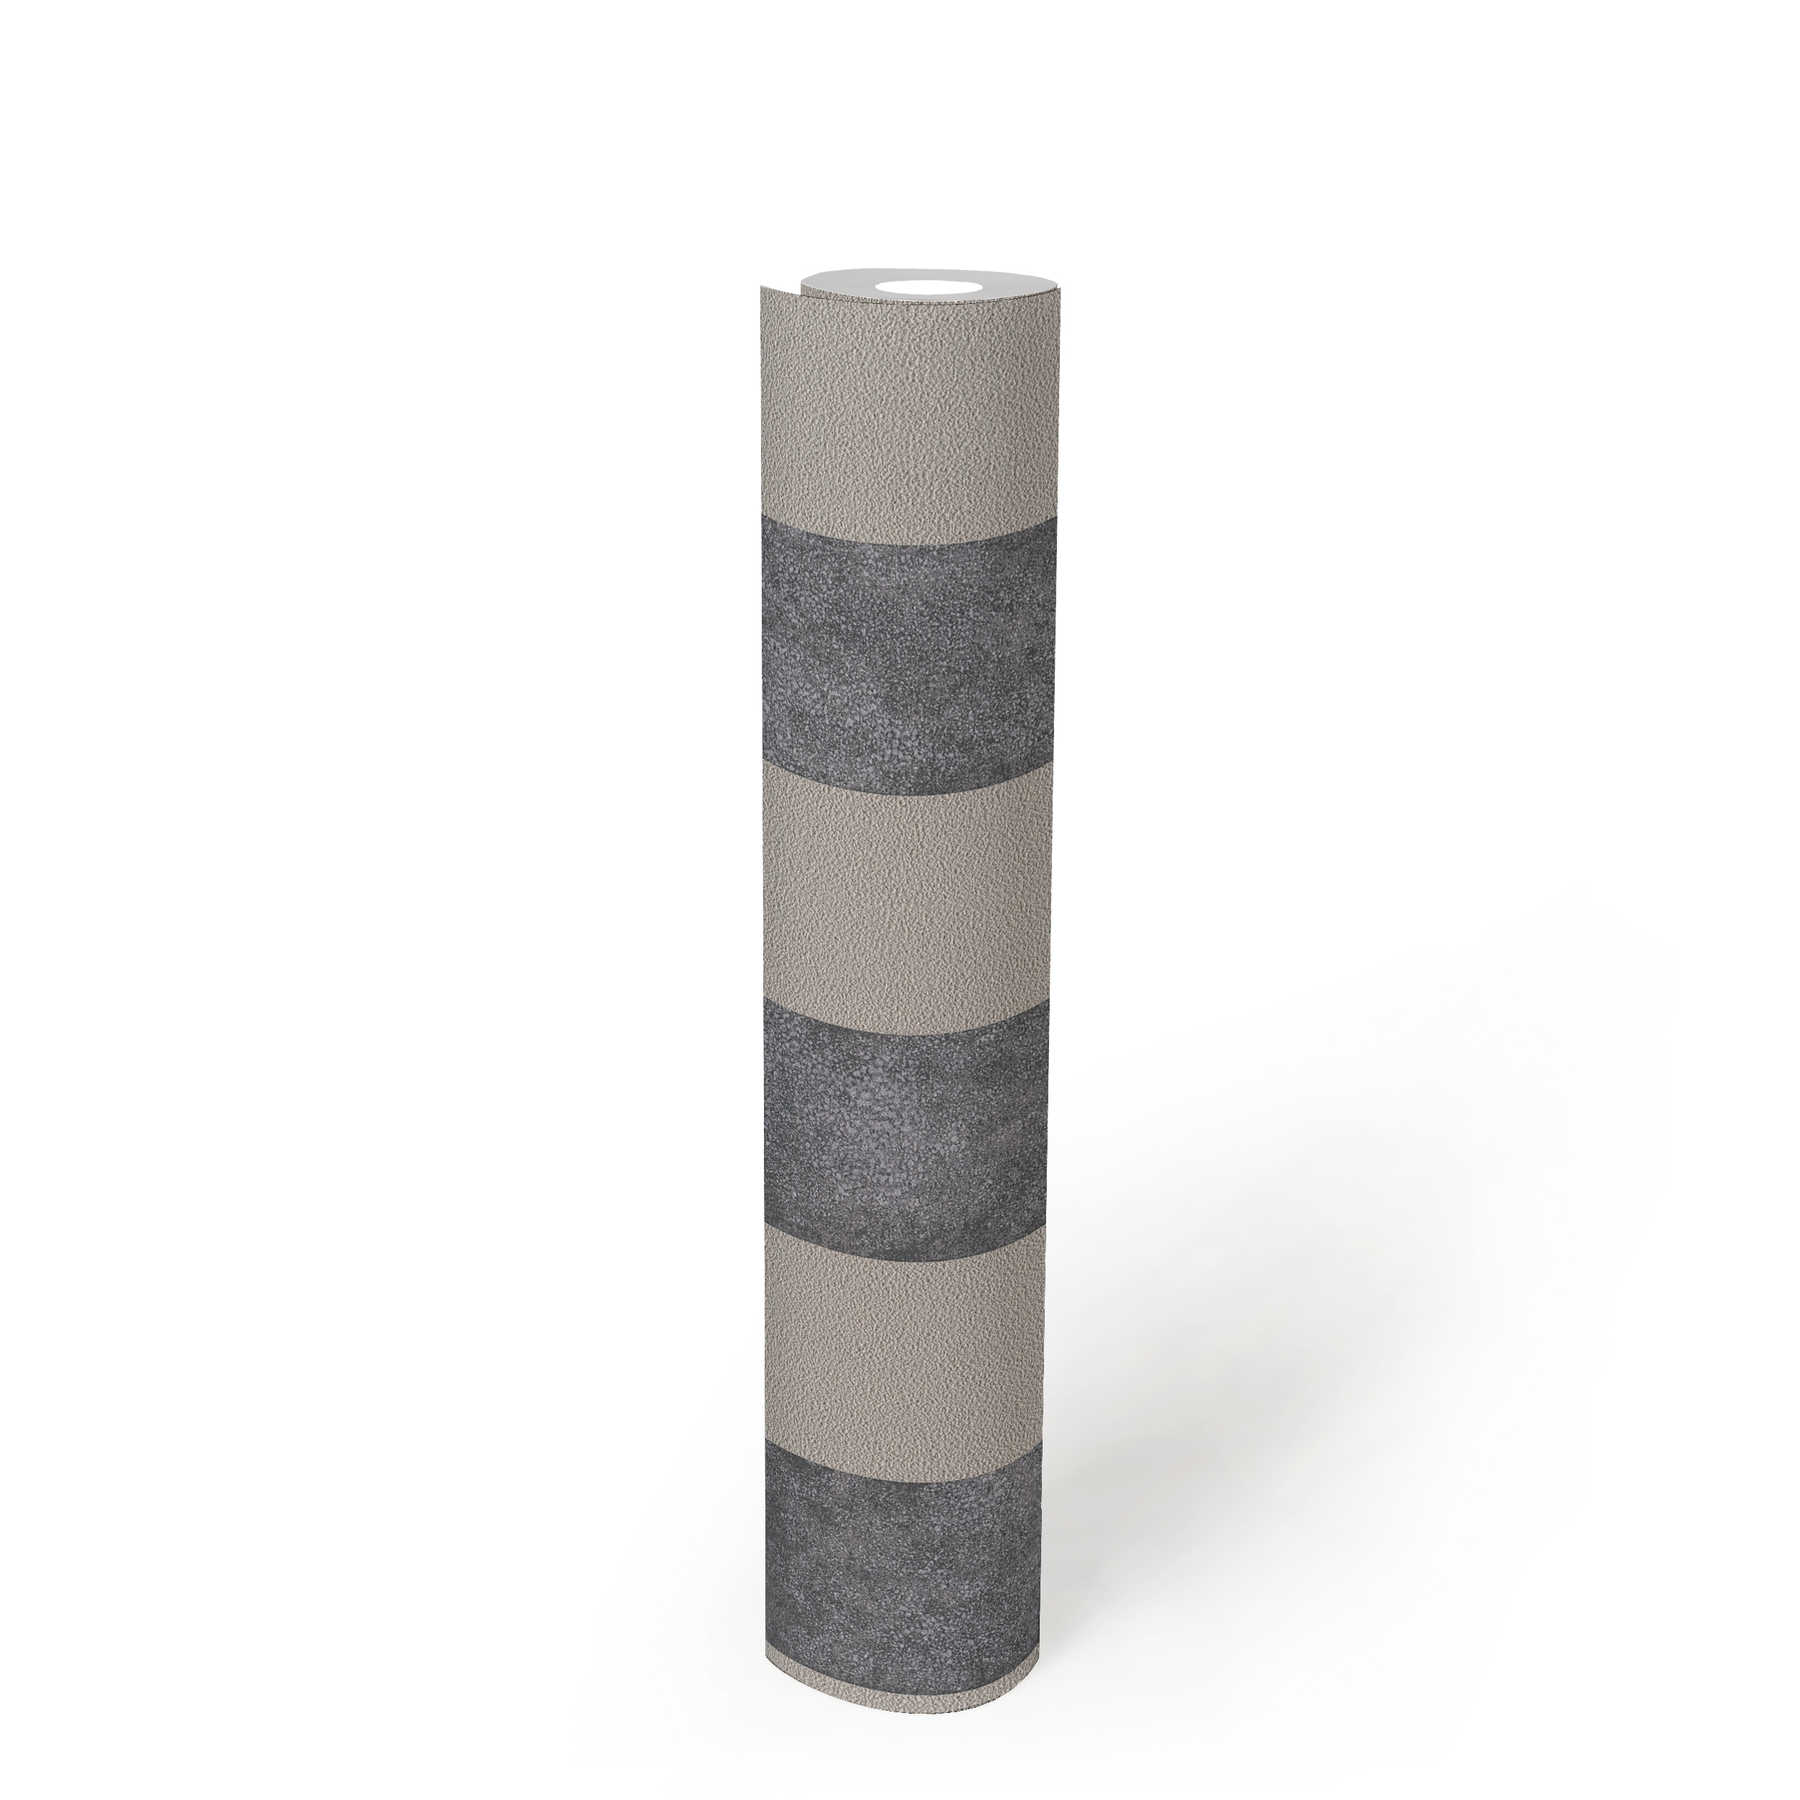             Blockstreifen-Tapete mit Farb- und Strukturmuster – Schwarz, Grau, Beige
        